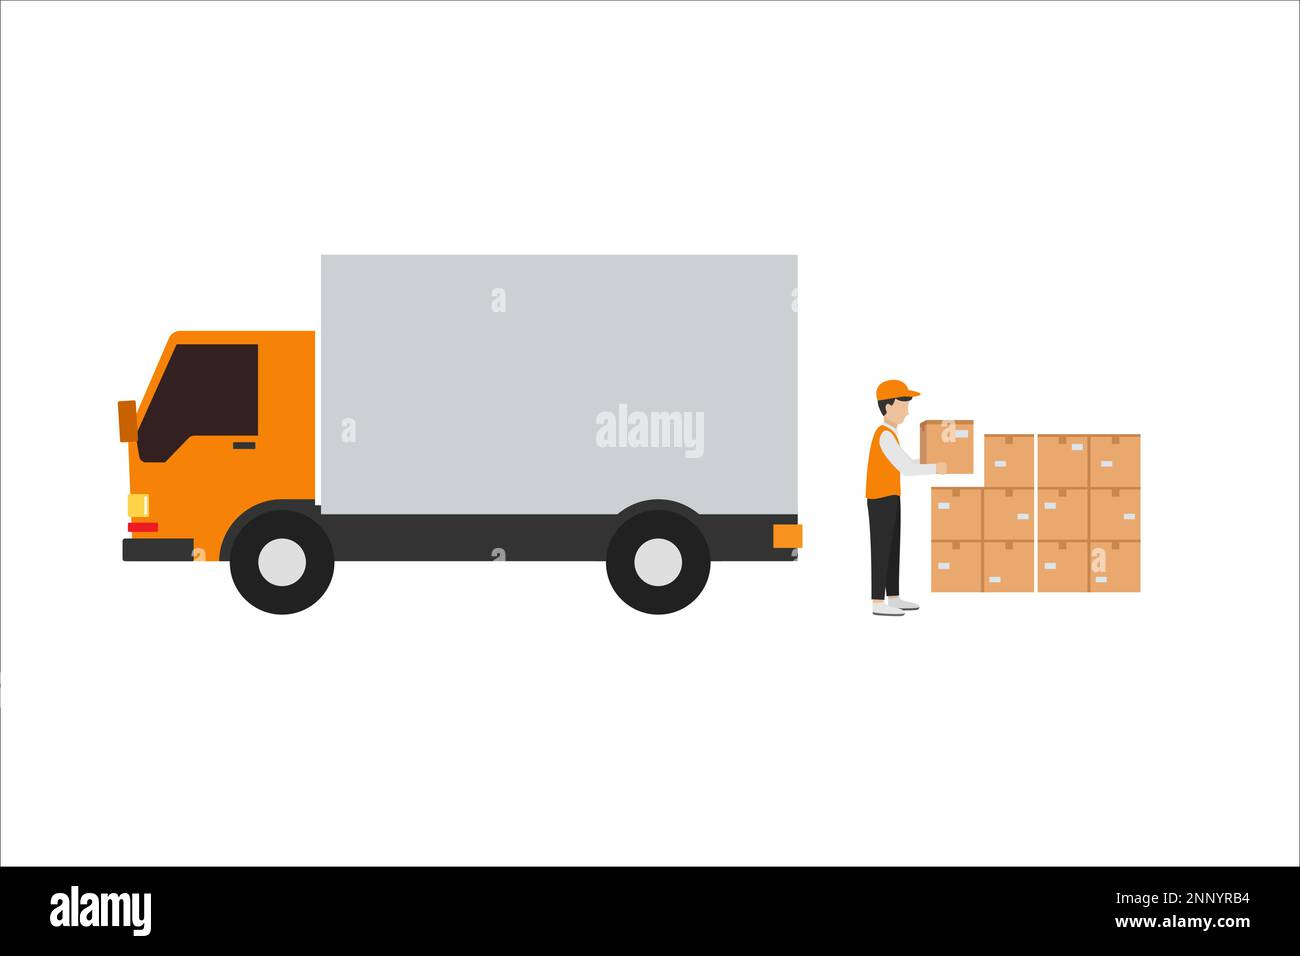 conception plate du transporteur chargeant les marchandises sur le camion pour la livraison à l'adresse de destination isolée sur fond blanc Illustration de Vecteur